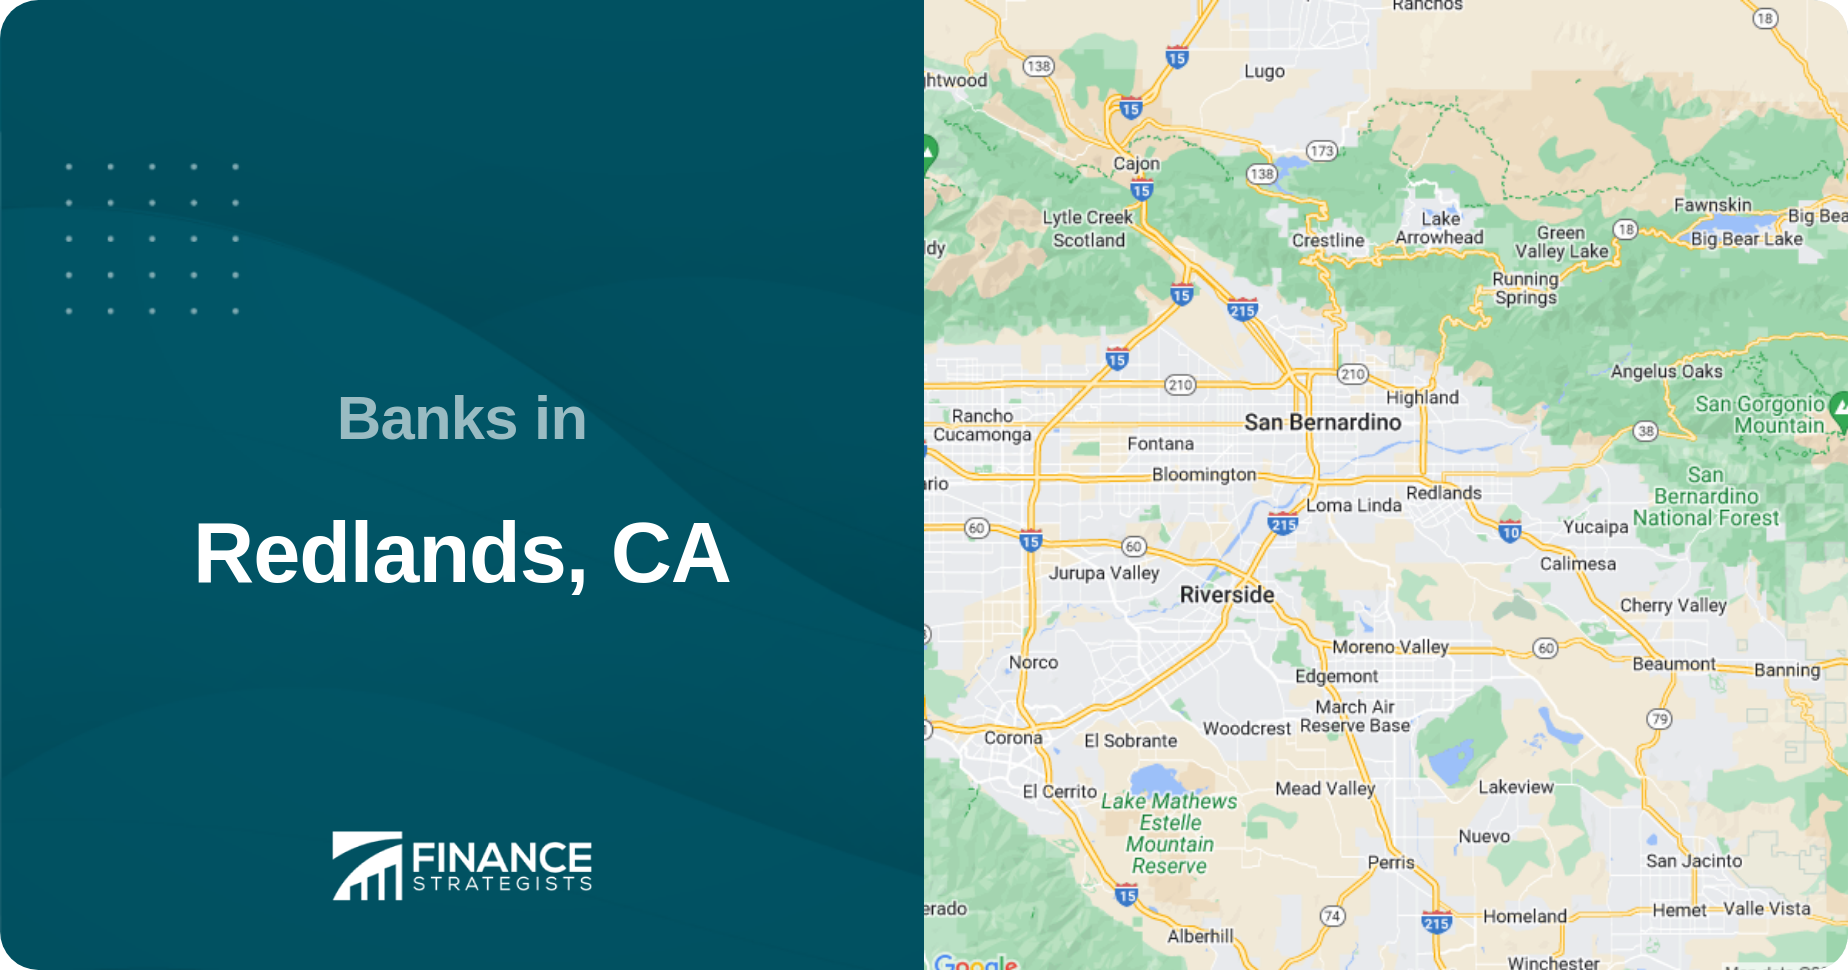 Banks in Redlands, CA